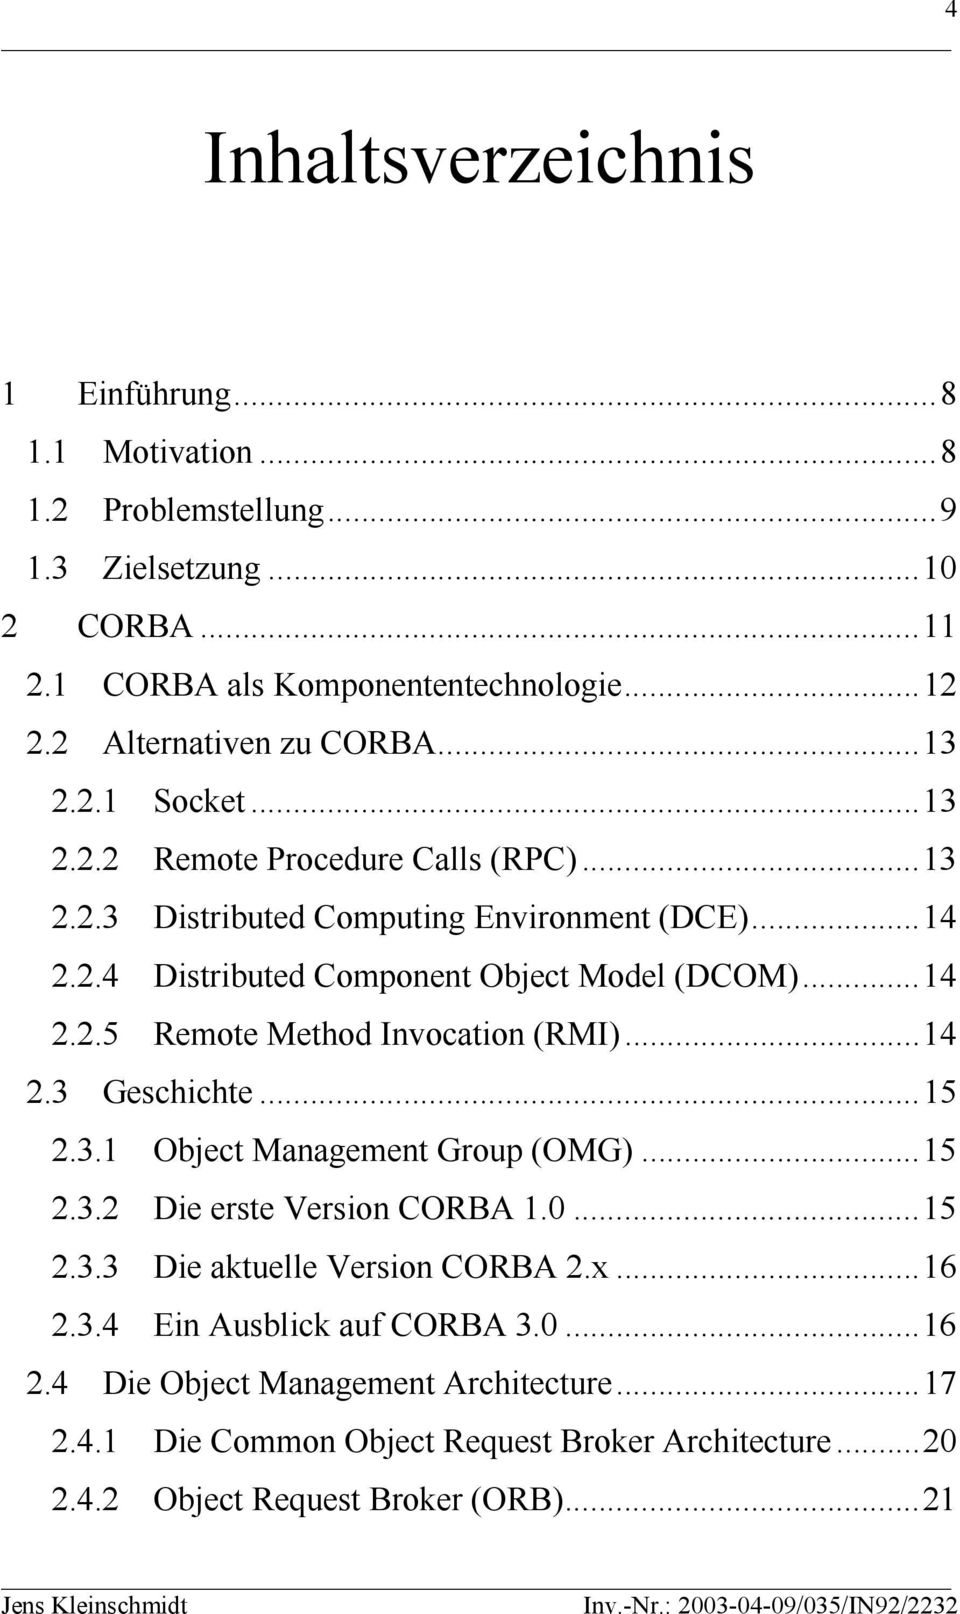 ..14 2.2.5 Remote Method Invocation (RMI)...14 2.3 Geschichte...15 2.3.1 Object Management Group (OMG)...15 2.3.2 Die erste Version CORBA 1.0...15 2.3.3 Die aktuelle Version CORBA 2.